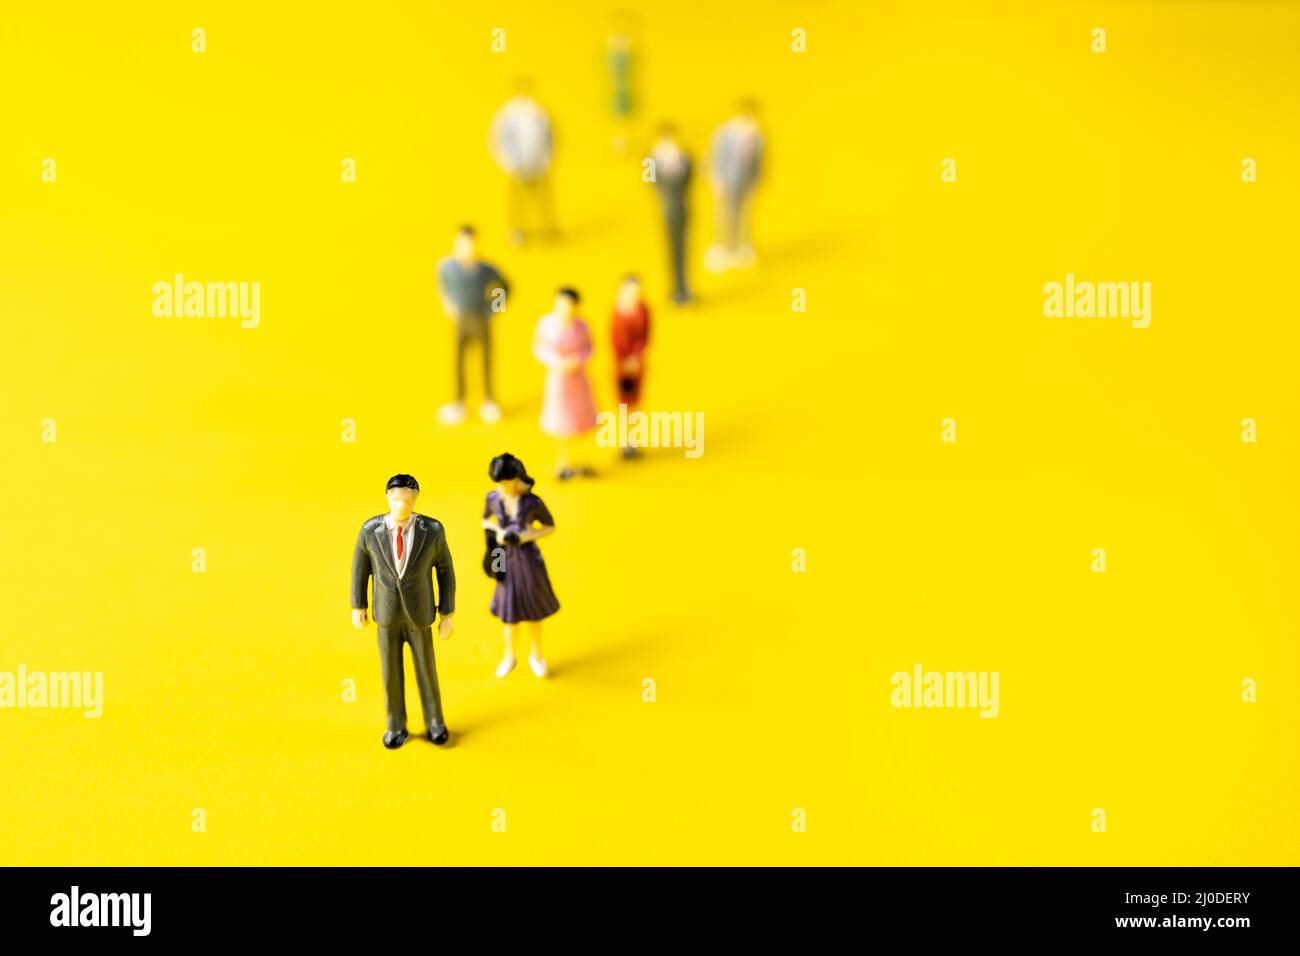 alcune figurine di uomini e donne su una superficie gialla. Foto Stock